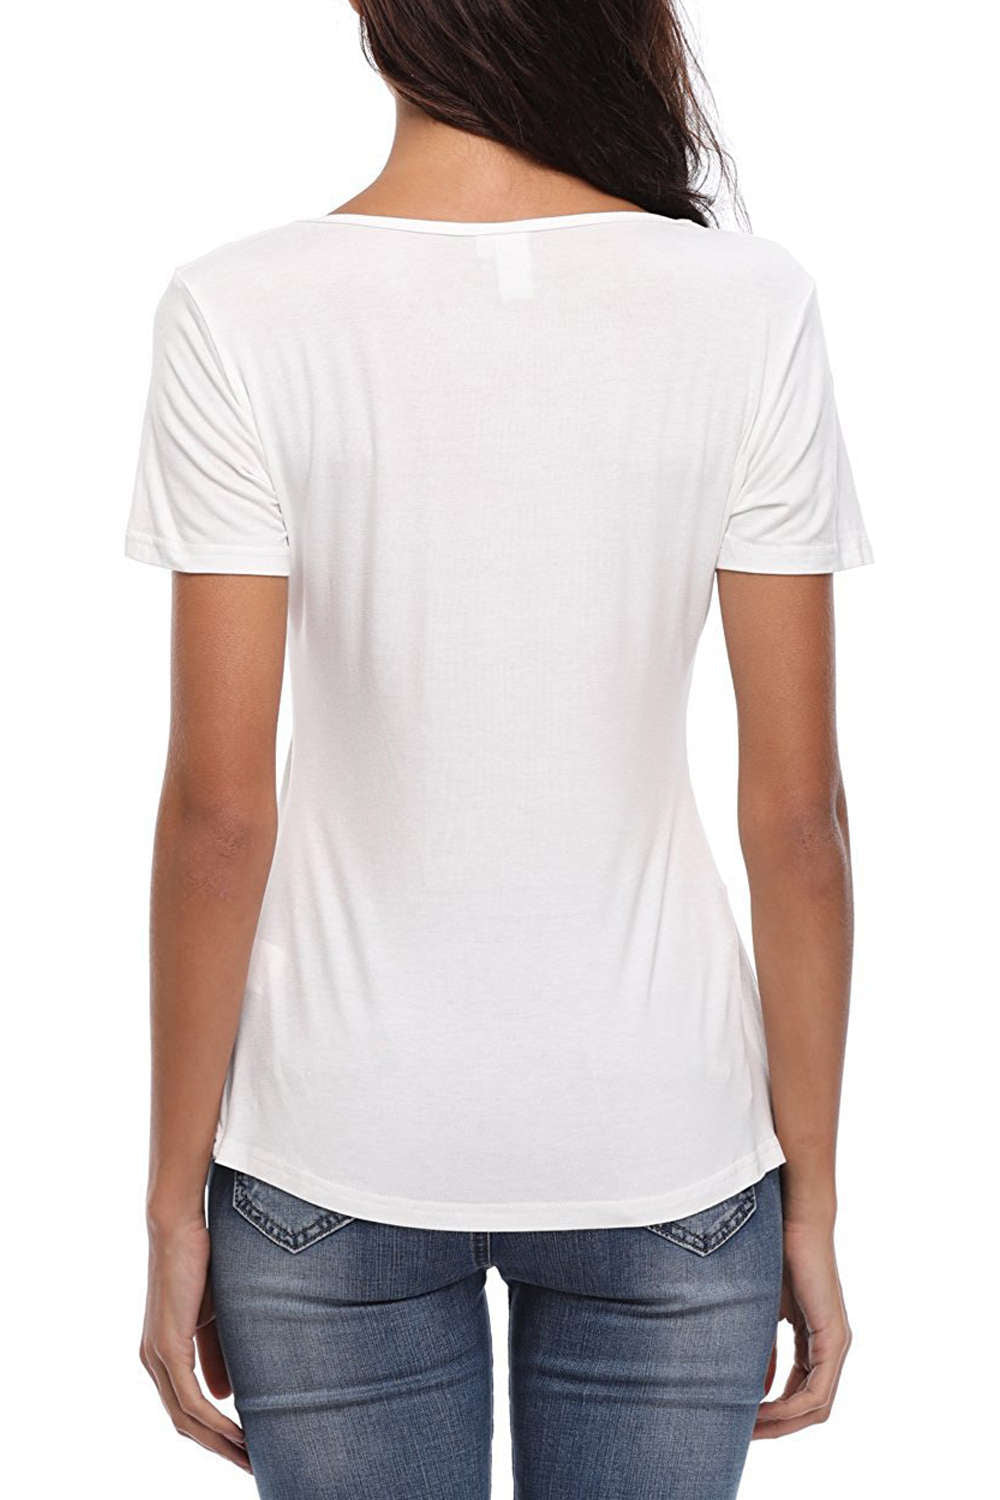 Iyasson Lace Panel V Neck Short Sleeve T Shirt